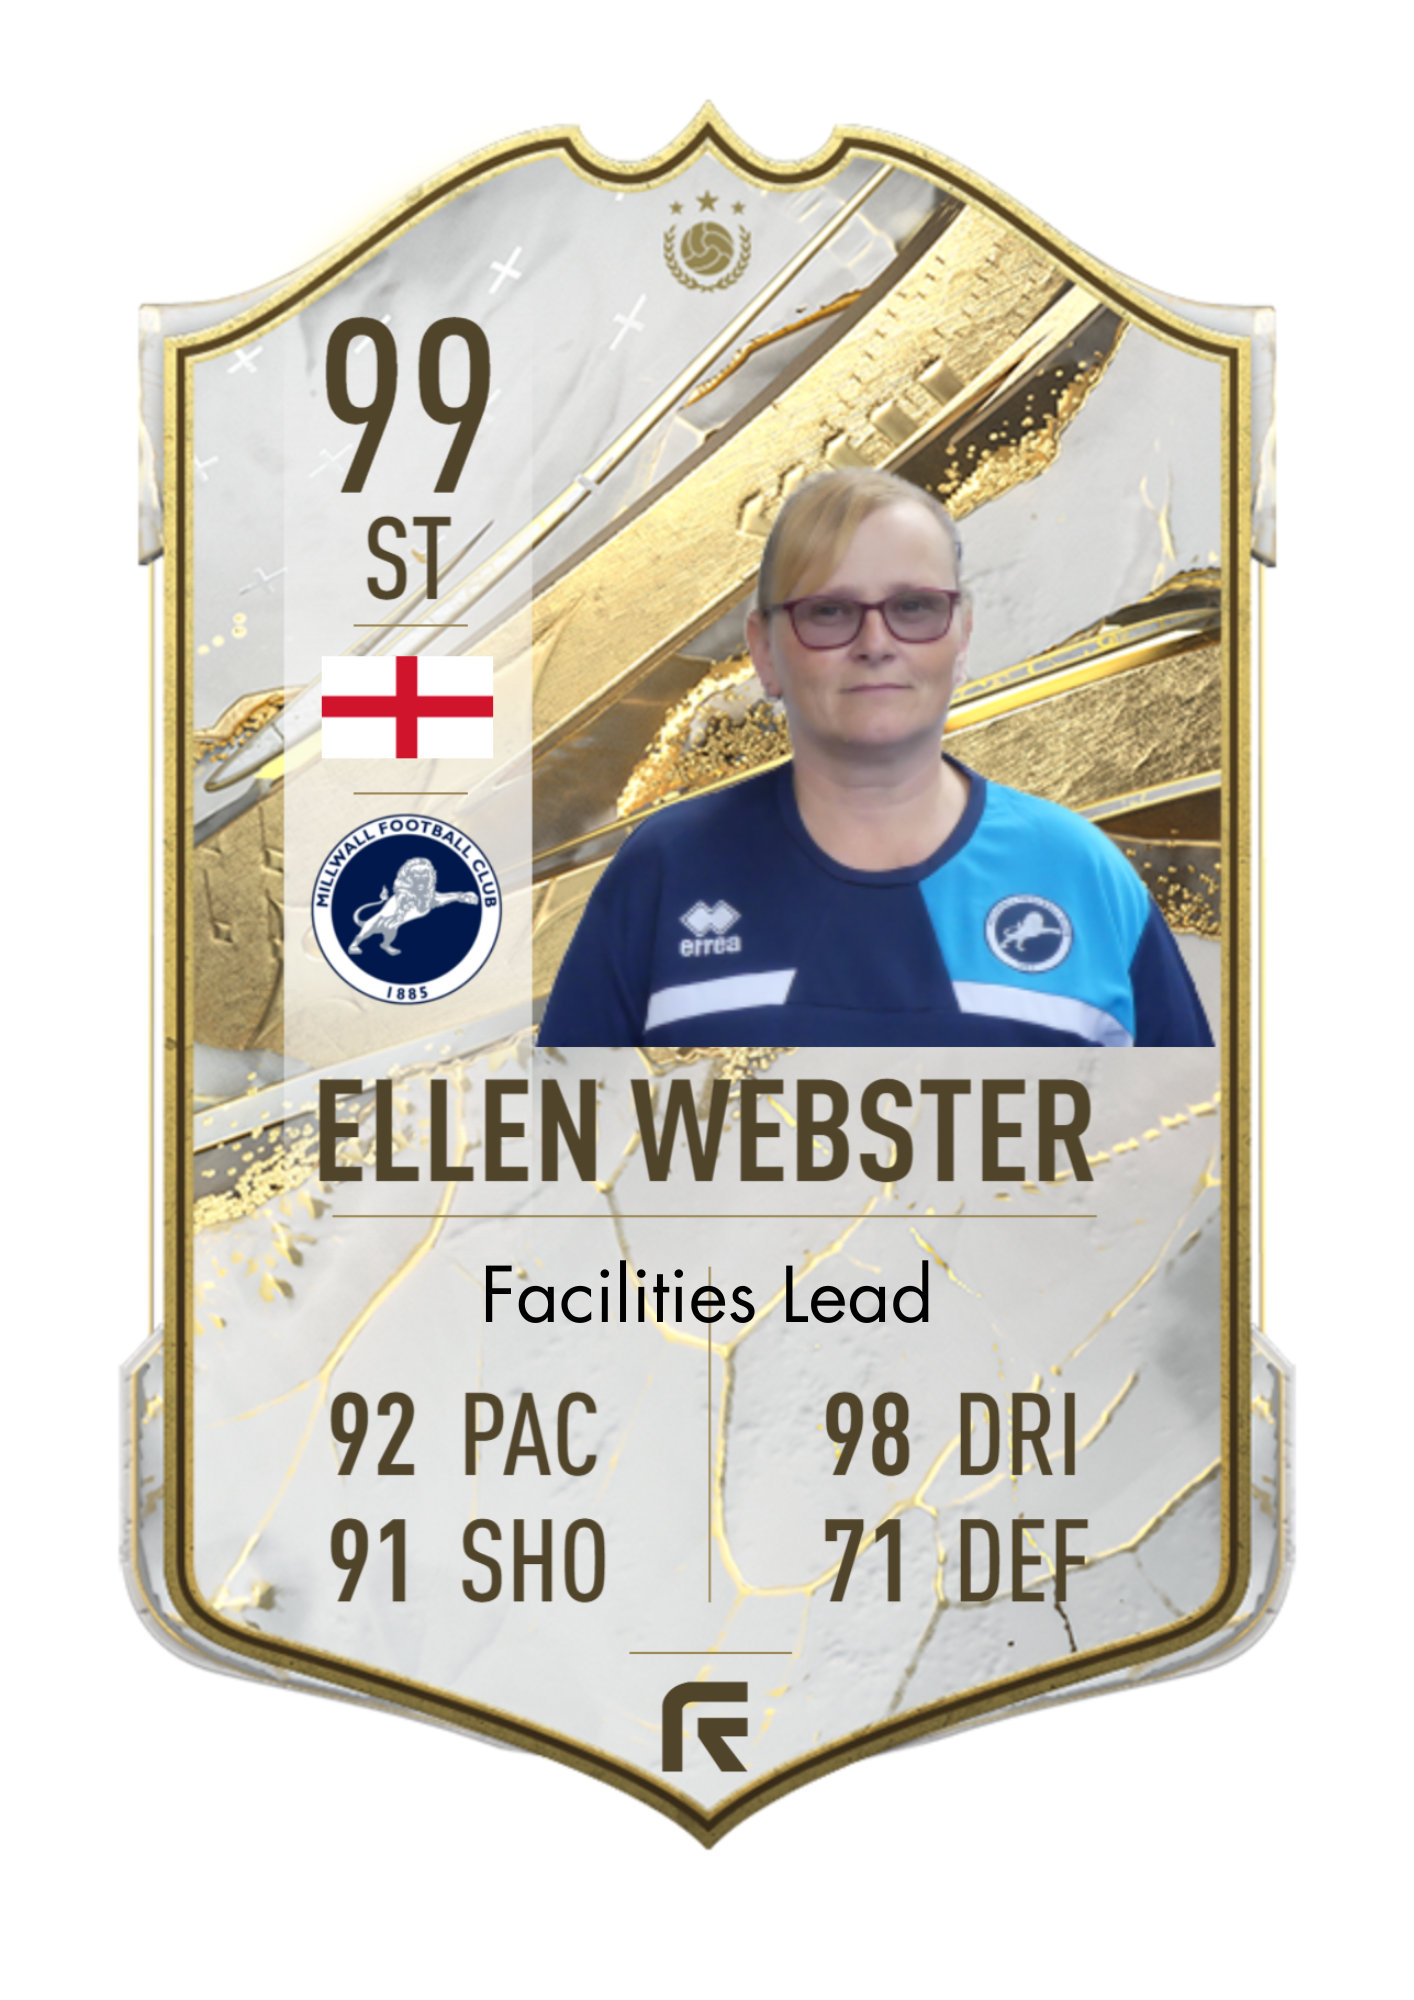 Ellen Webster